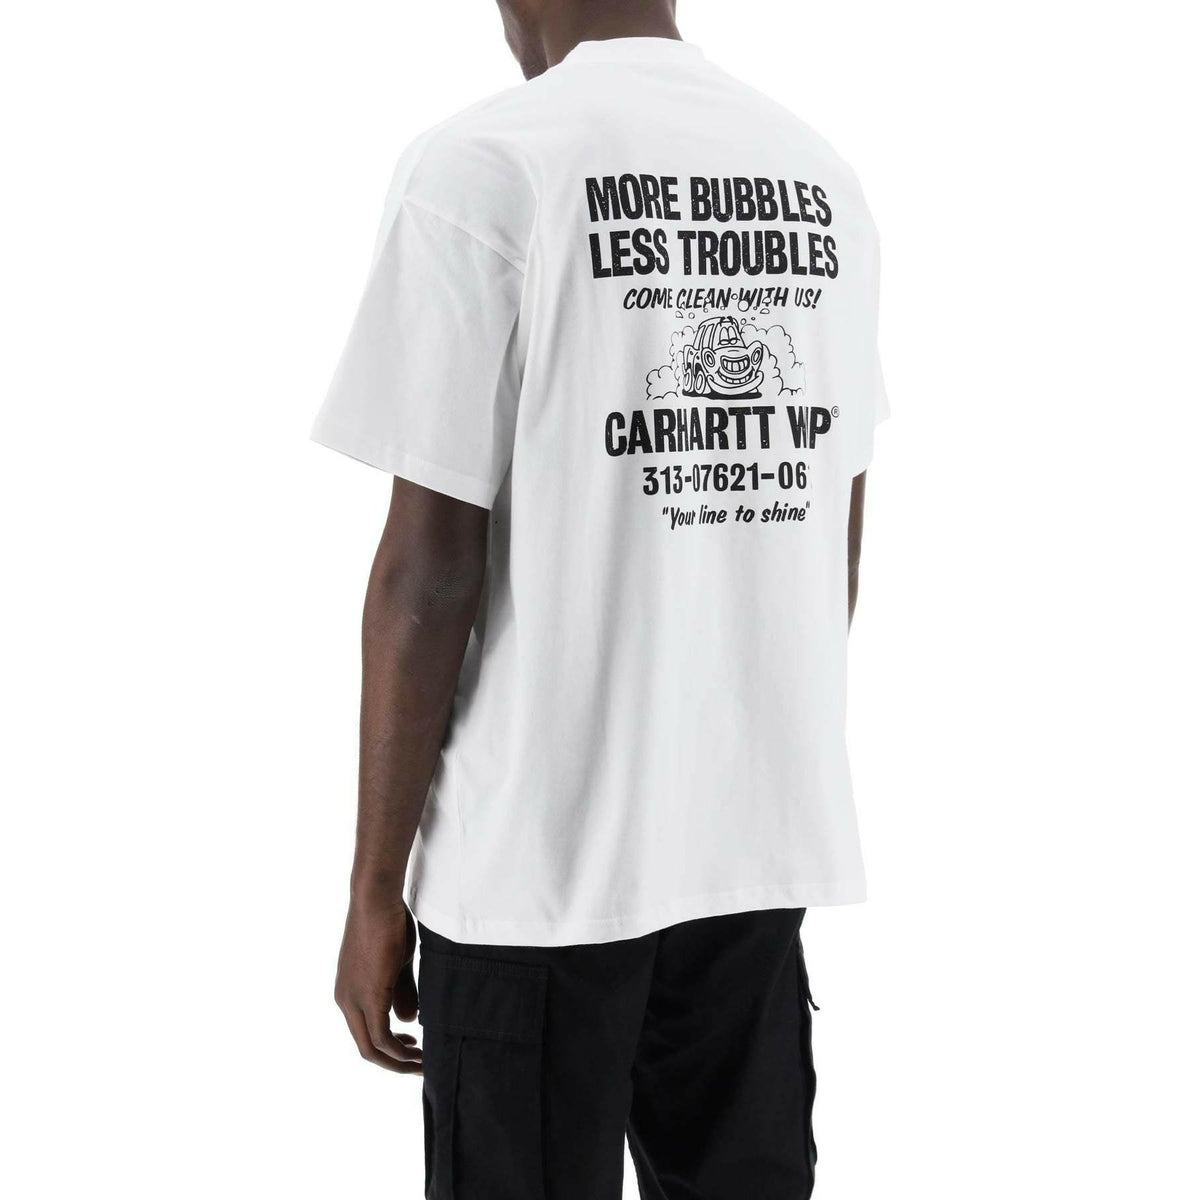 CARHARTT WIP - Organic Cotton Trouble Free T-shirt - JOHN JULIA